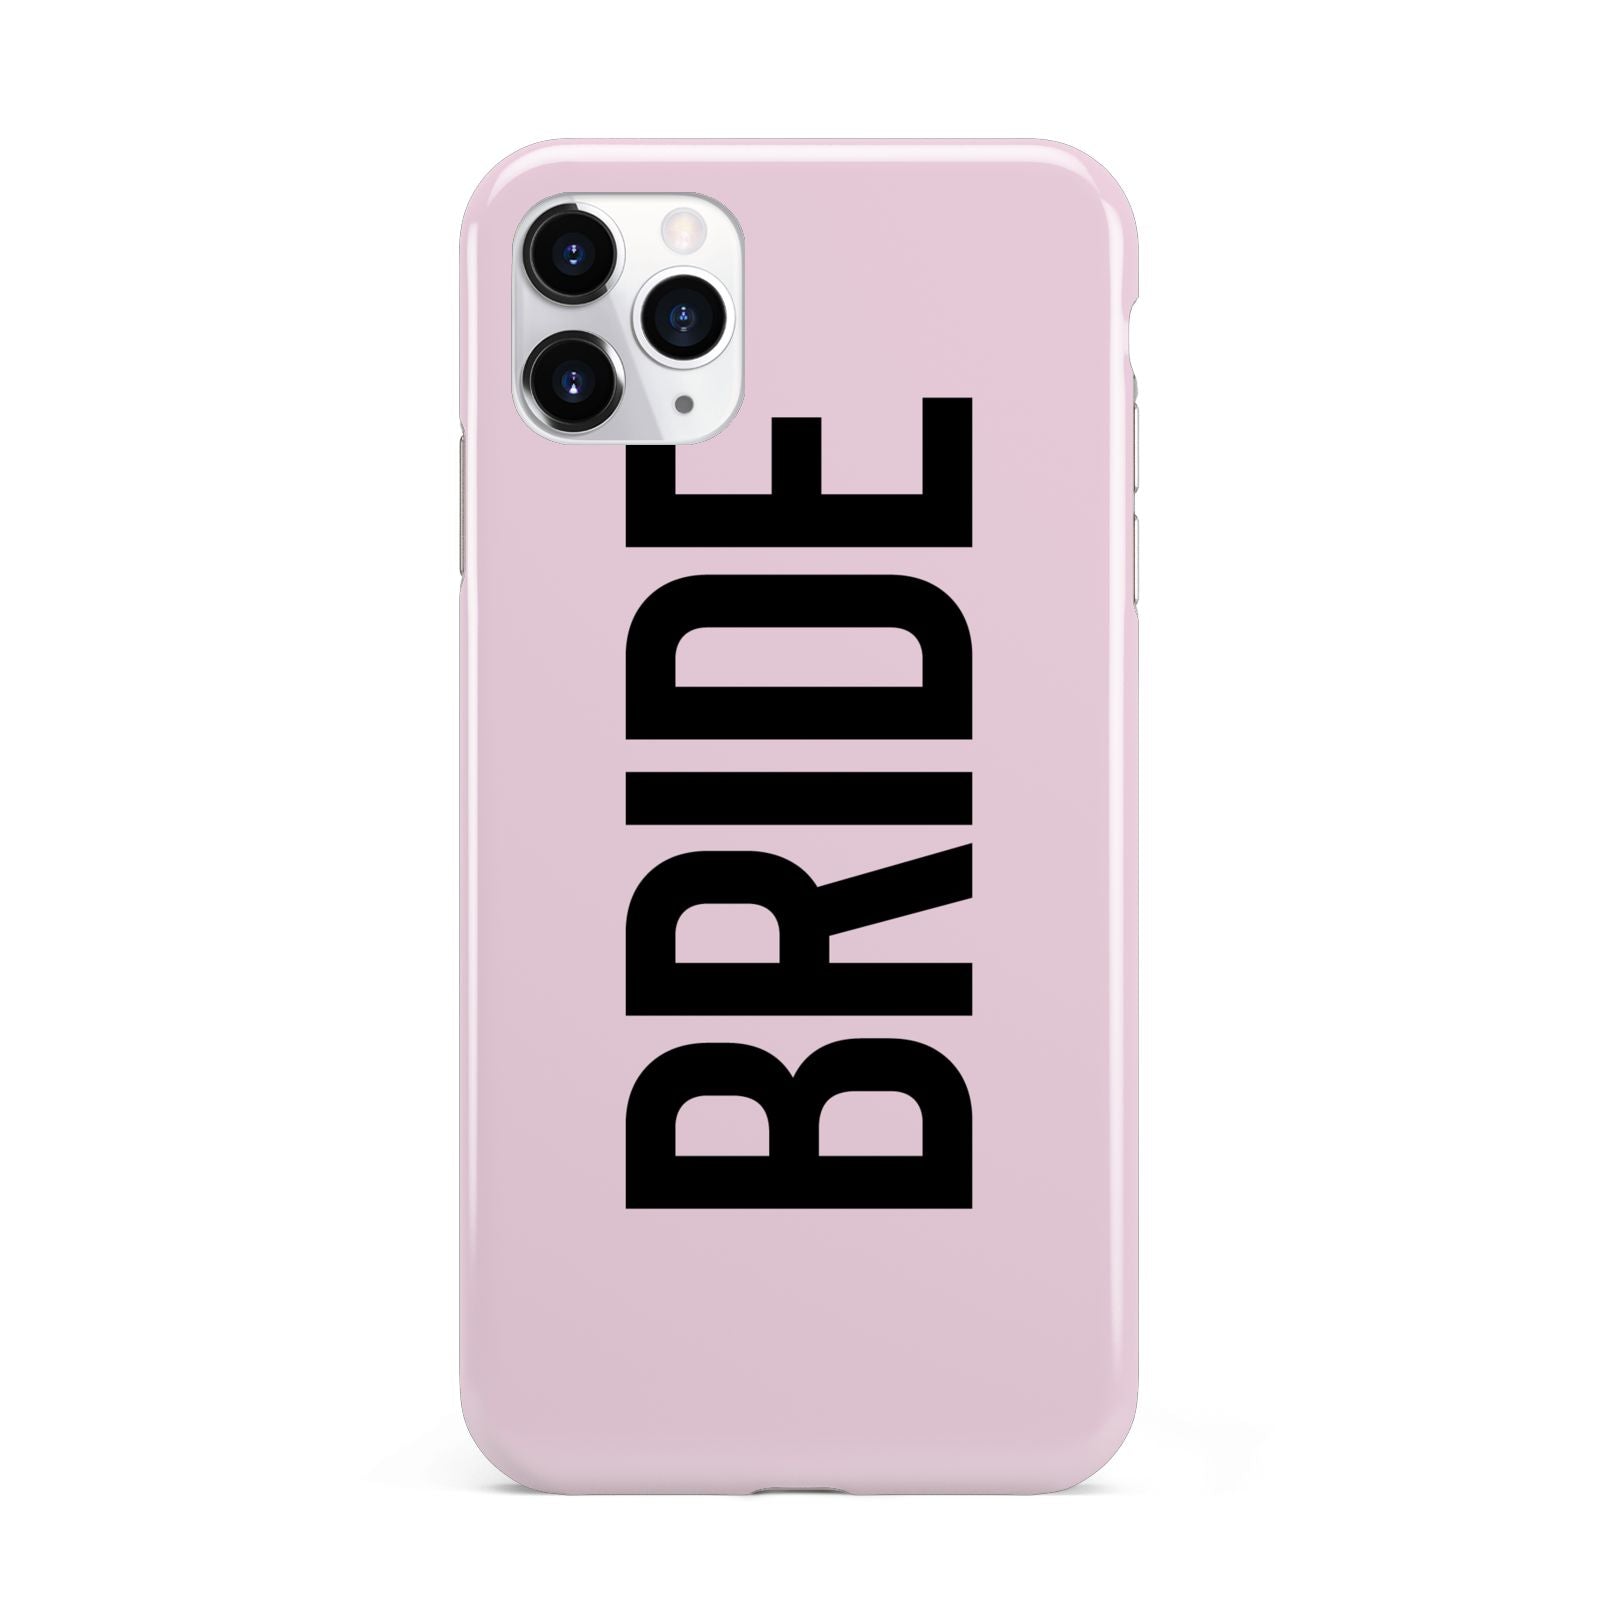 Bride iPhone 11 Pro Max 3D Tough Case